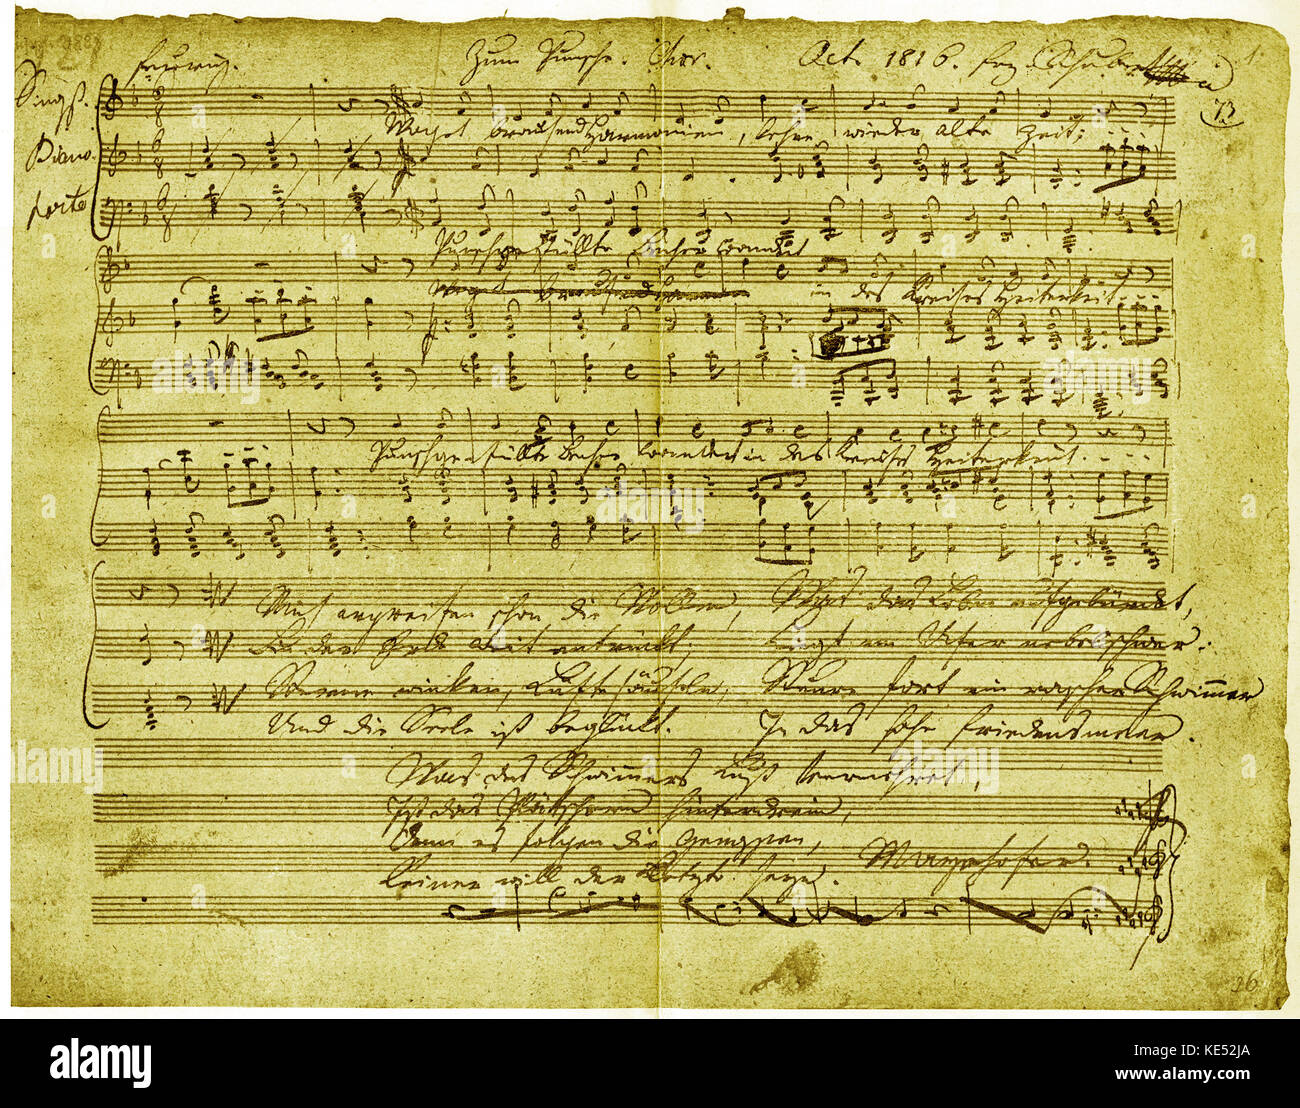 Franz Schubert, manuscrit score pour 'Zum Punsche", octobre 1816. FS, compositeur autrichien : 31 janvier 1797 - 19 novembre 1828. Banque D'Images